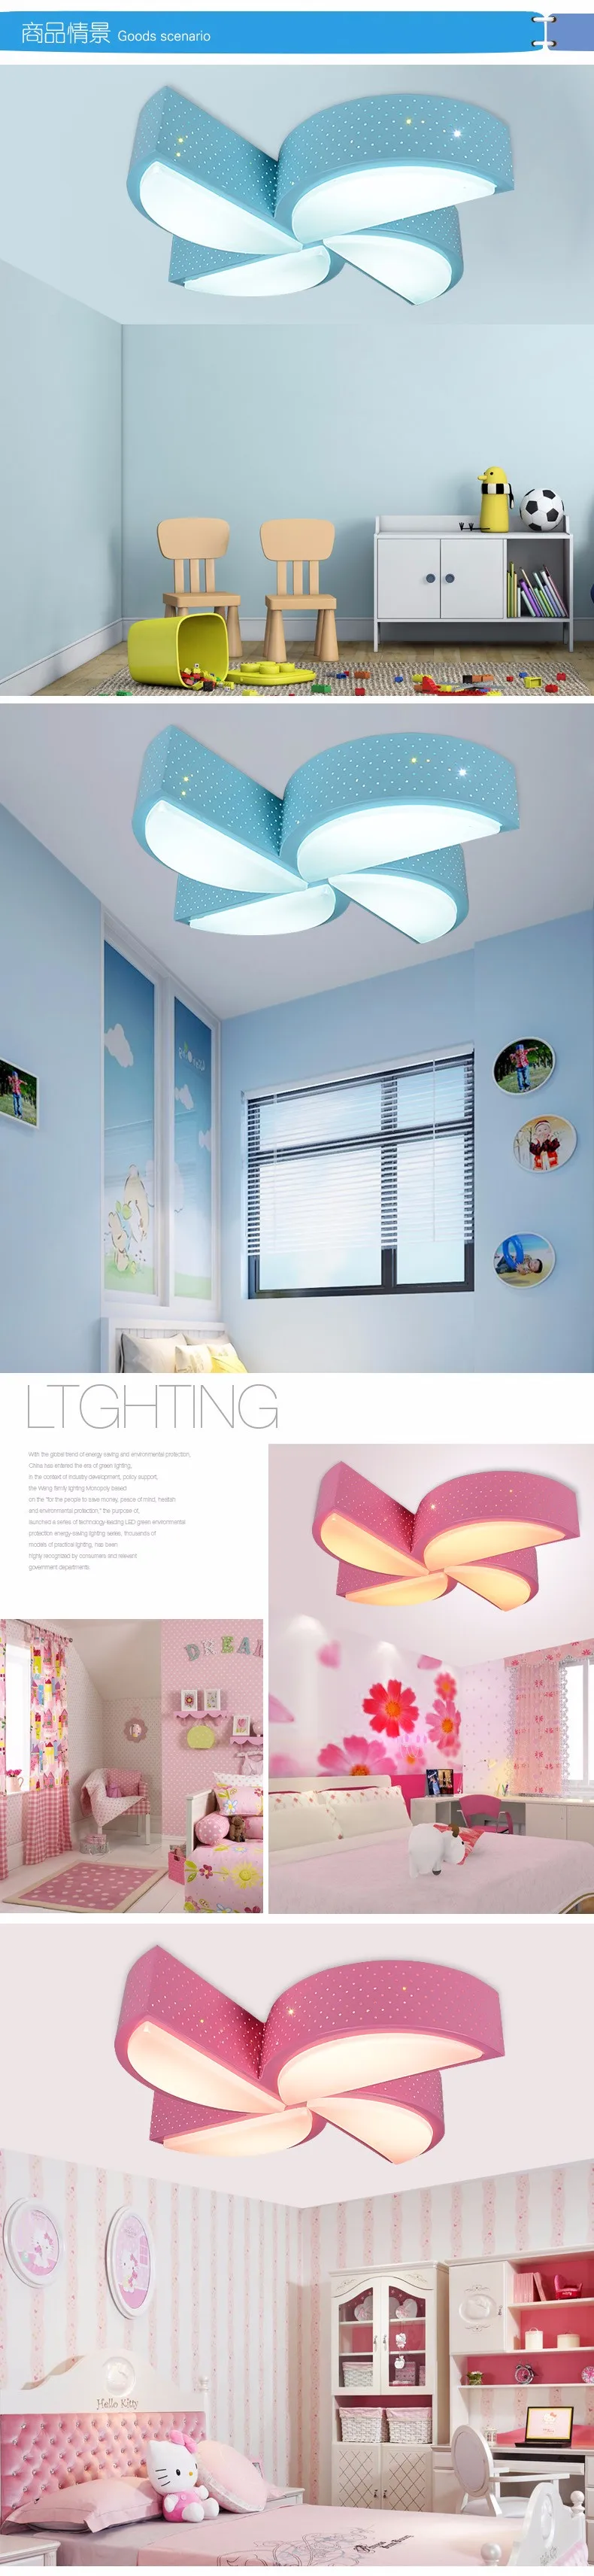 Qiseyuncai современный мультфильм мельница детская комната привело дистанционный пульт Потолочные светильники мужской девушка спальня теплое освещение